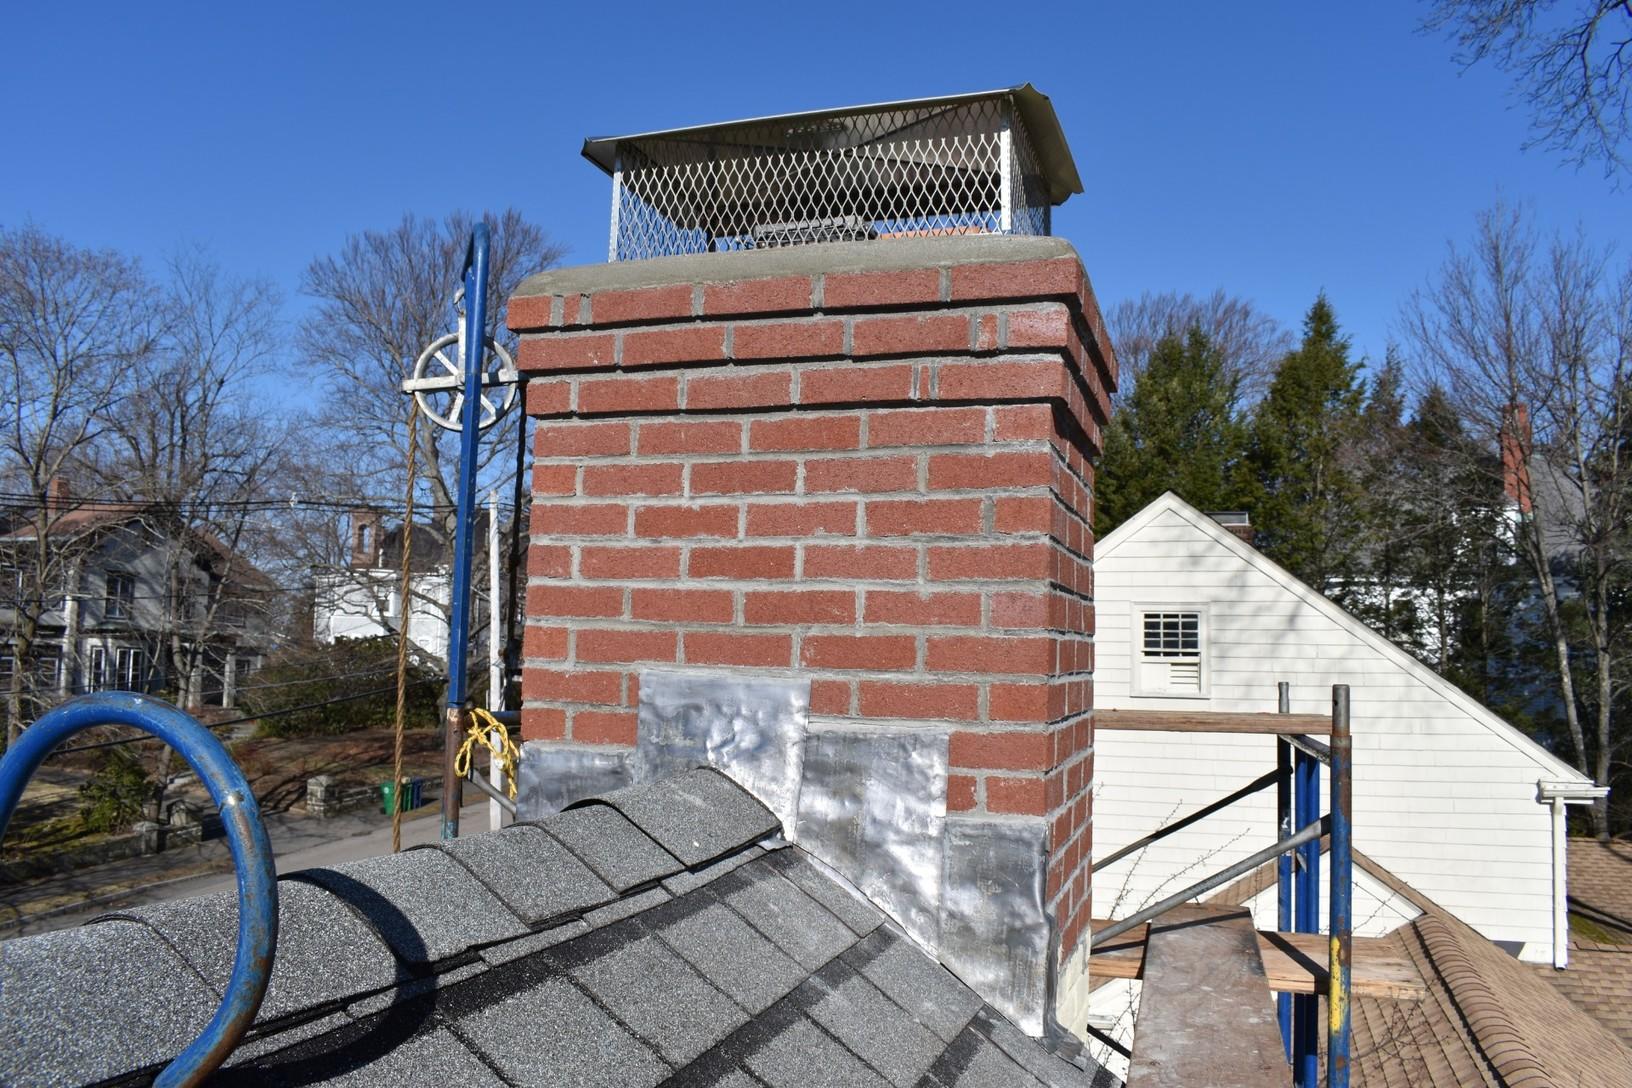 chimney restoration